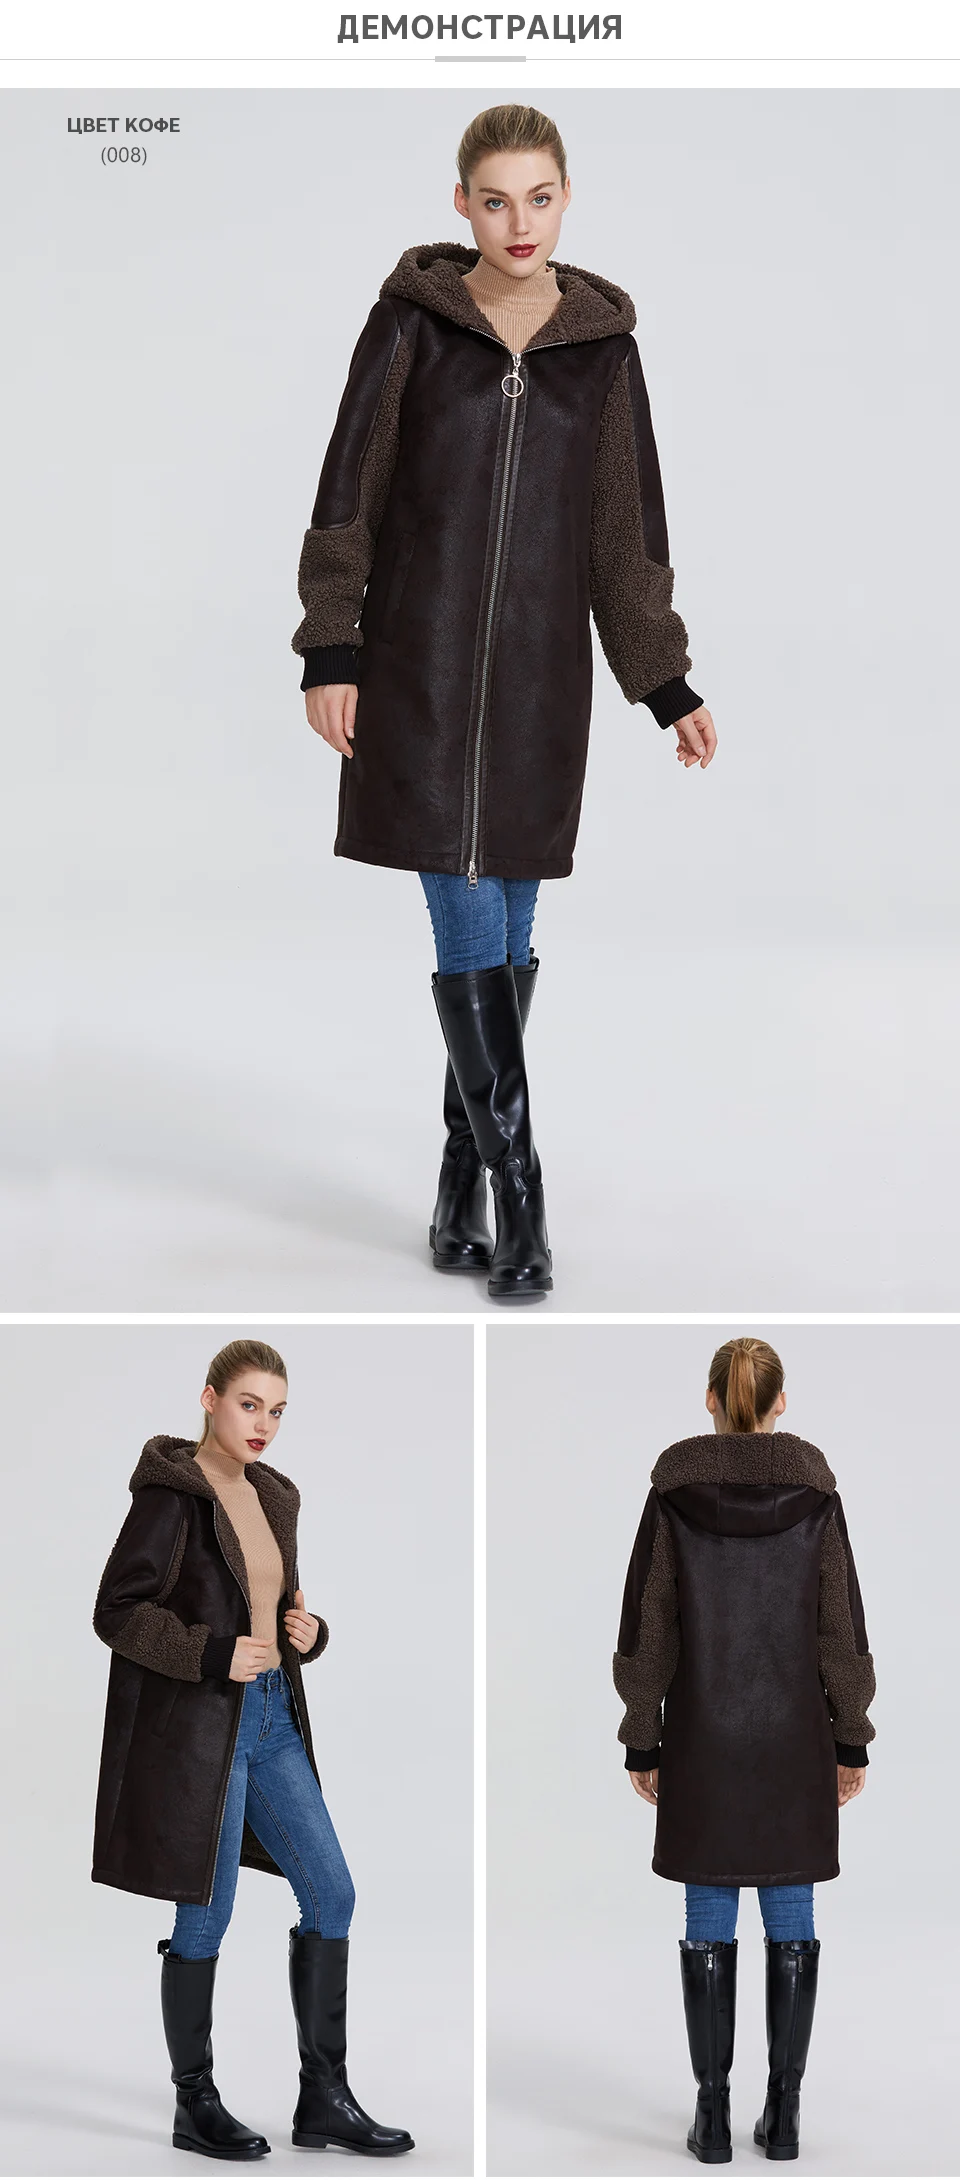 MIEGOFCE Новая зимняя женская коллекция куртка из искусственного меха женский необычный дизайн женской пальто- дубленки сшит из двух тканей и куртка зима выделяет свой особенный стиль необычные расцветки